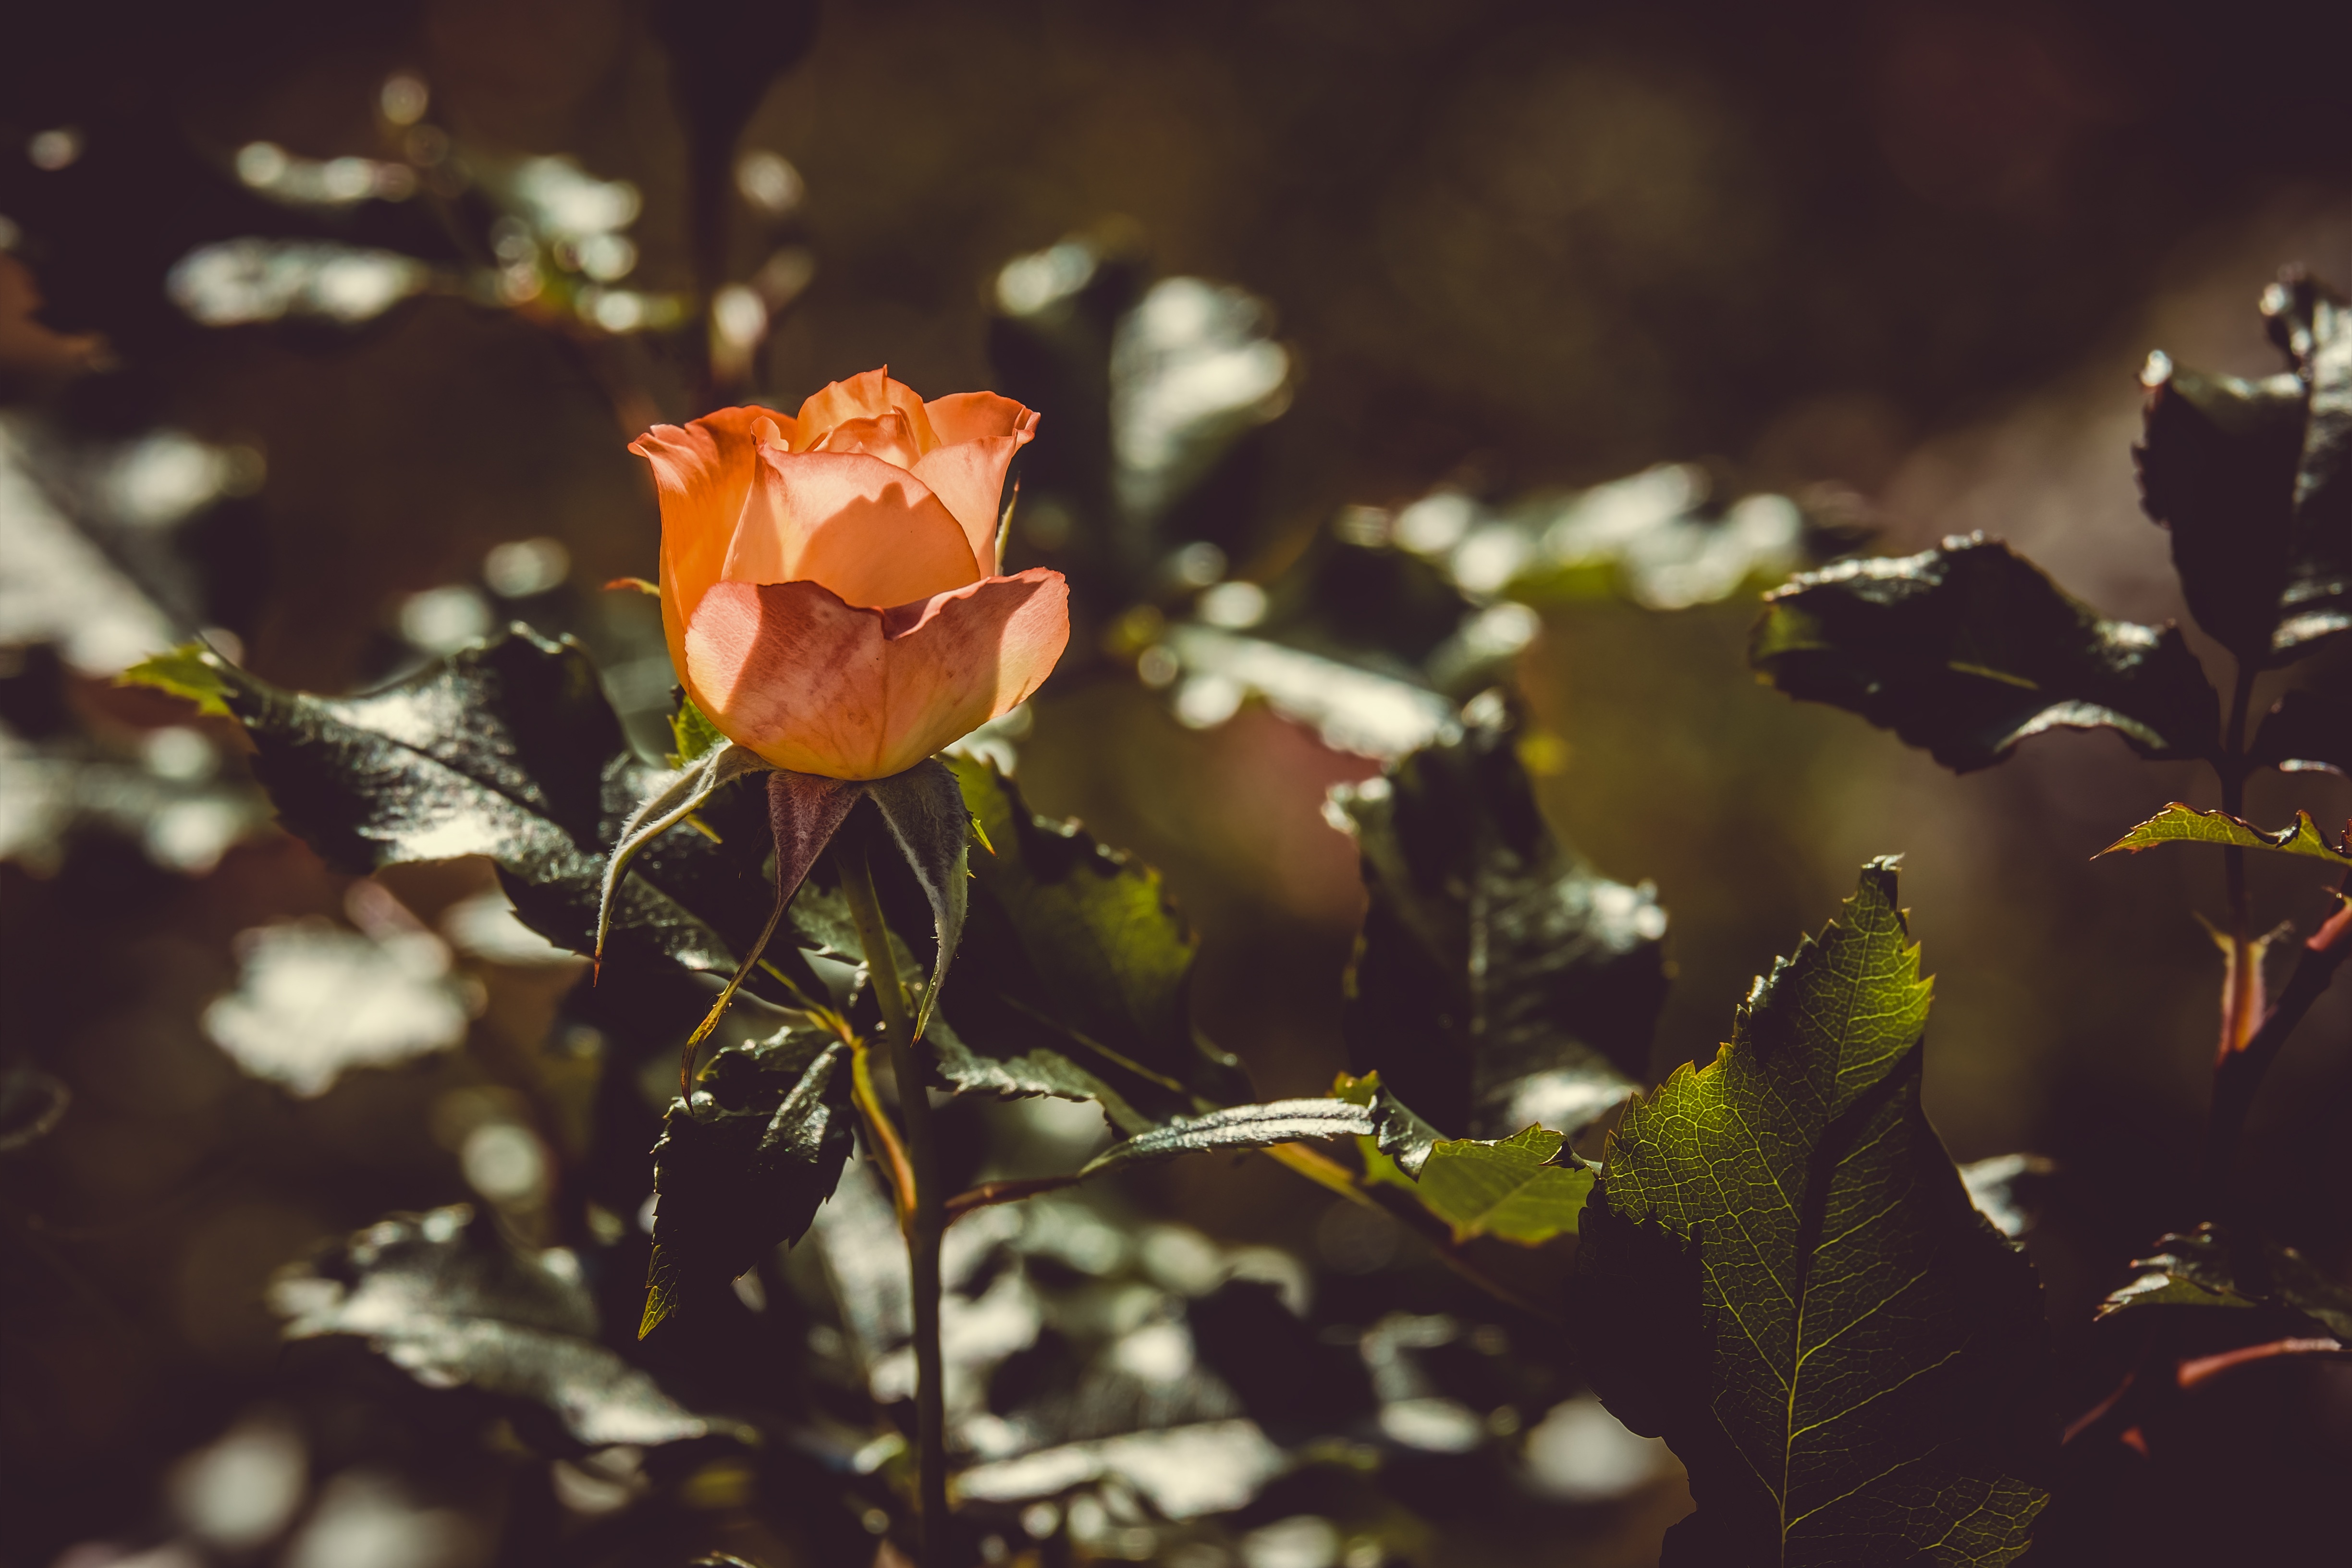 rose, flowers, bush, rose flower, bud, sunlight